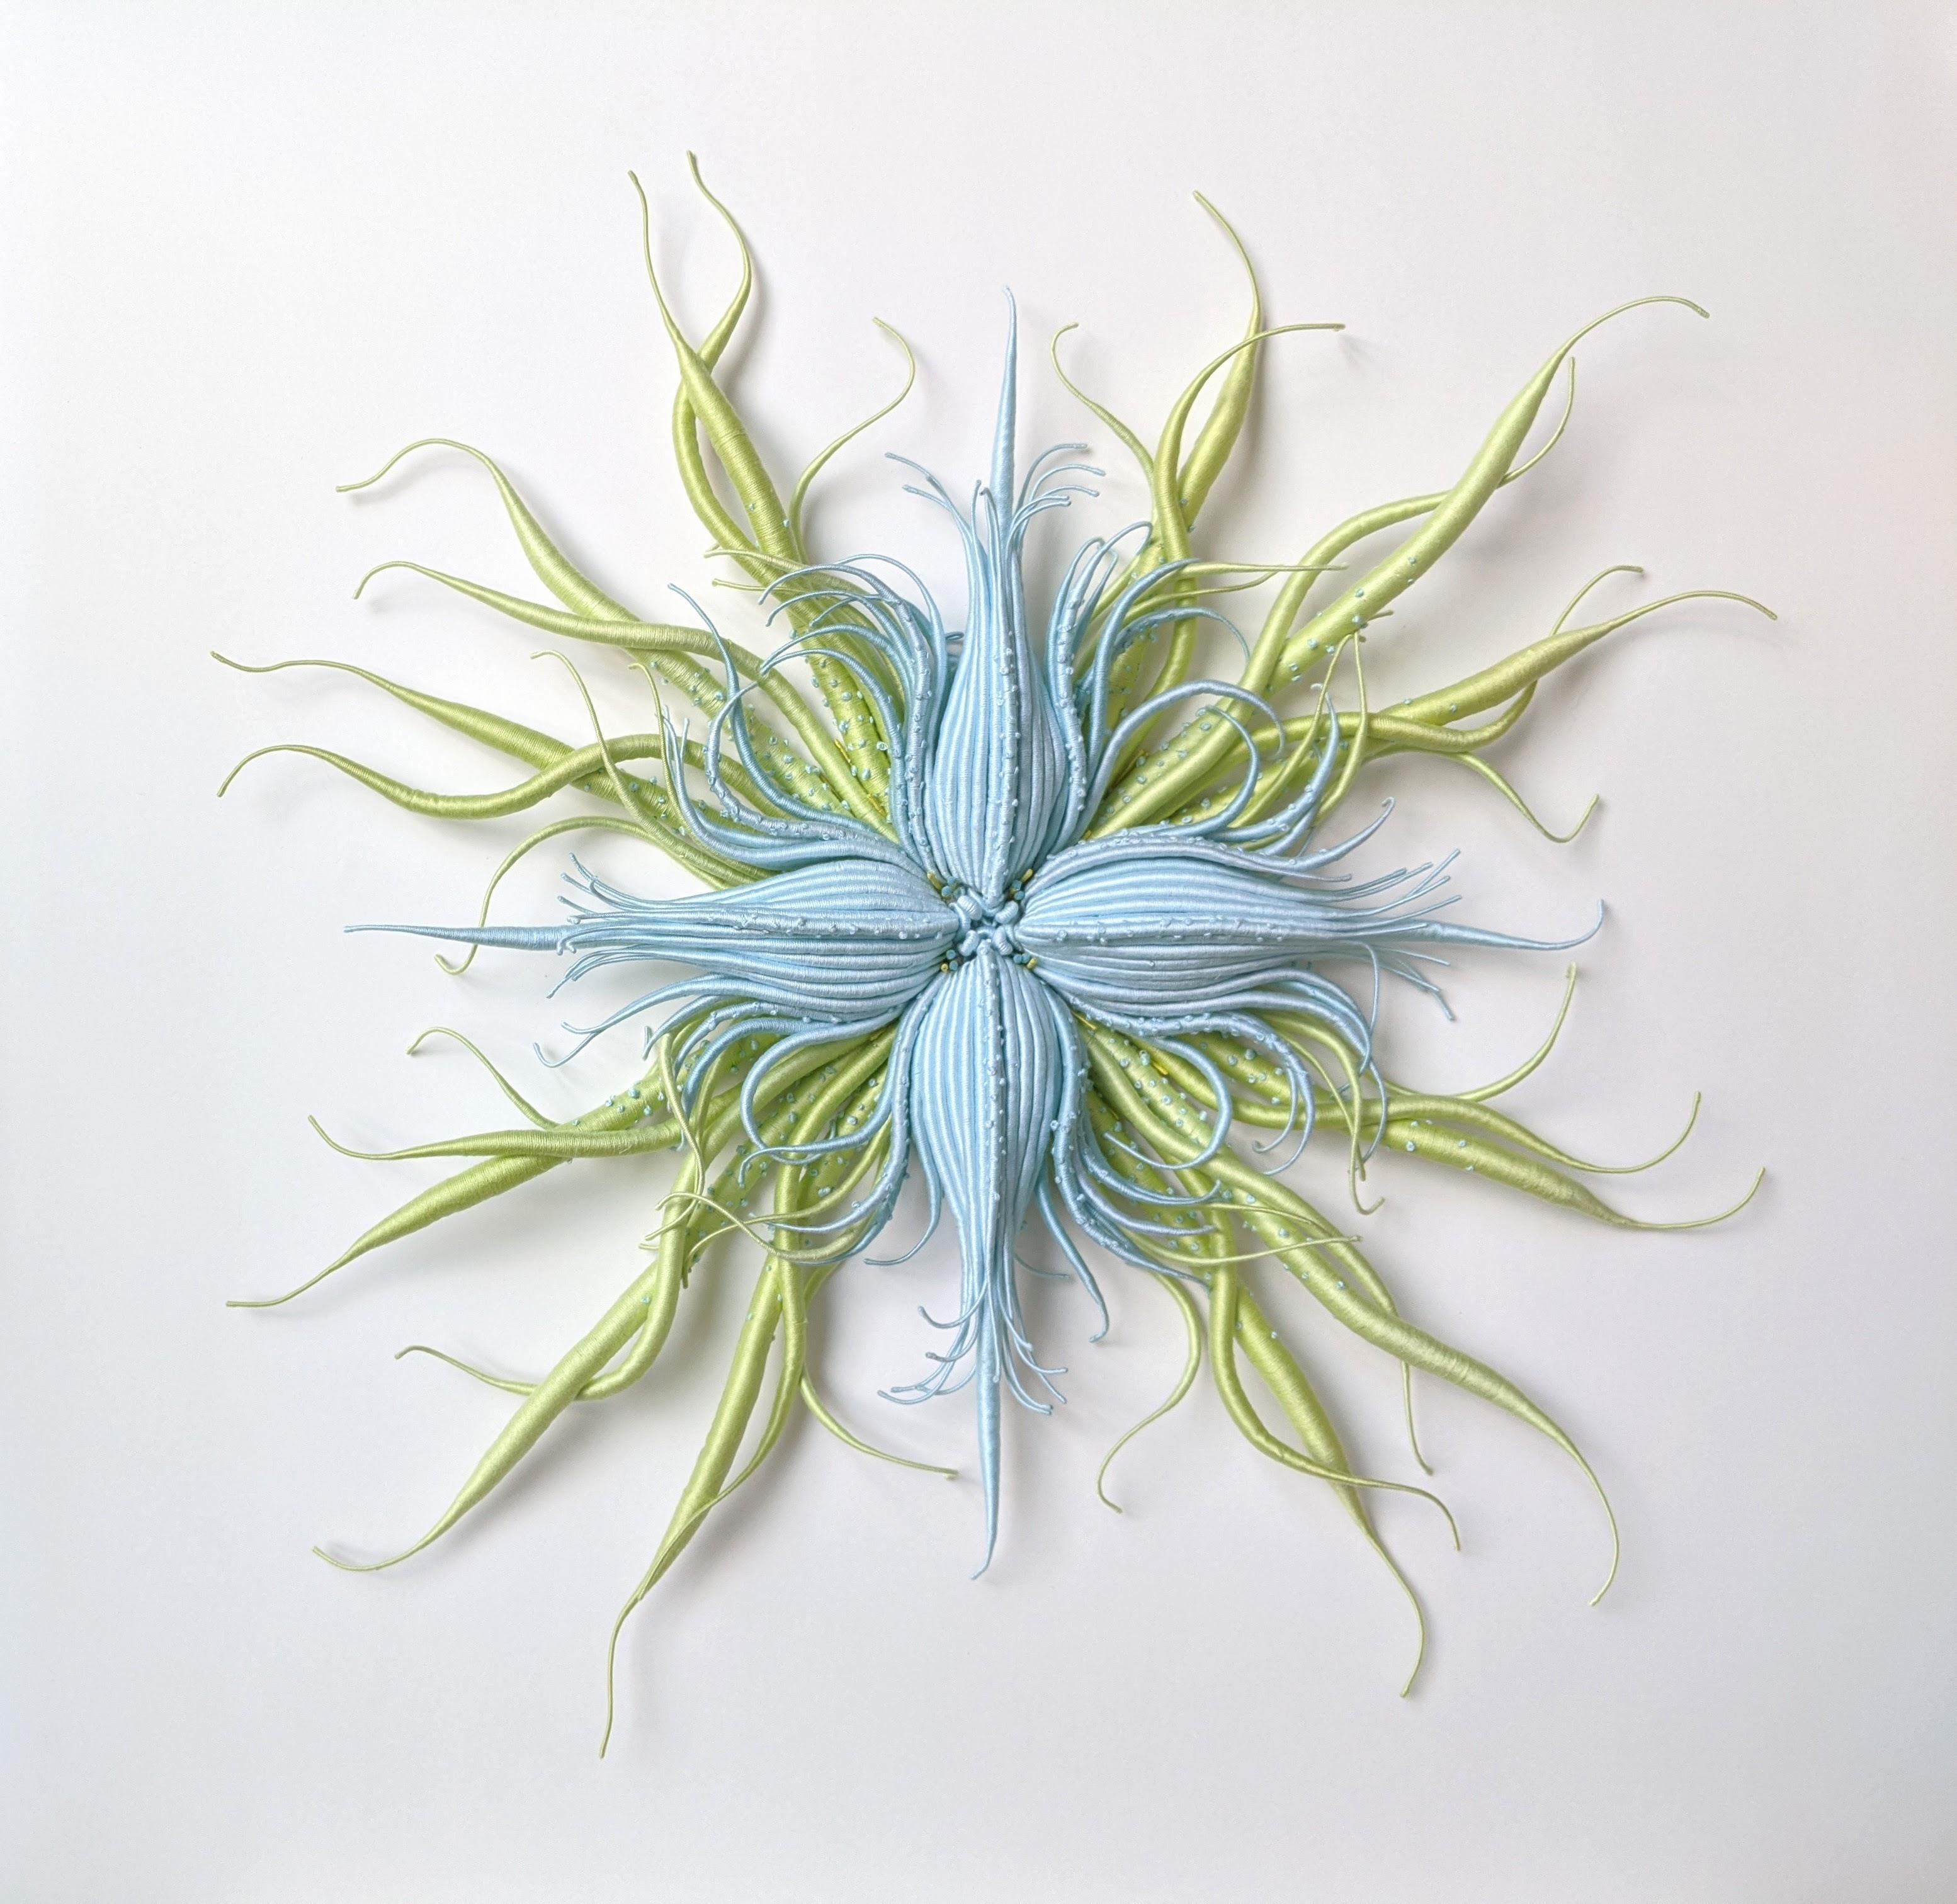 Catherine Latson Abstract Sculpture – Specimen 20, gerahmte, von der Natur inspirierte blau-grüne handgefärbte Faserskulptur